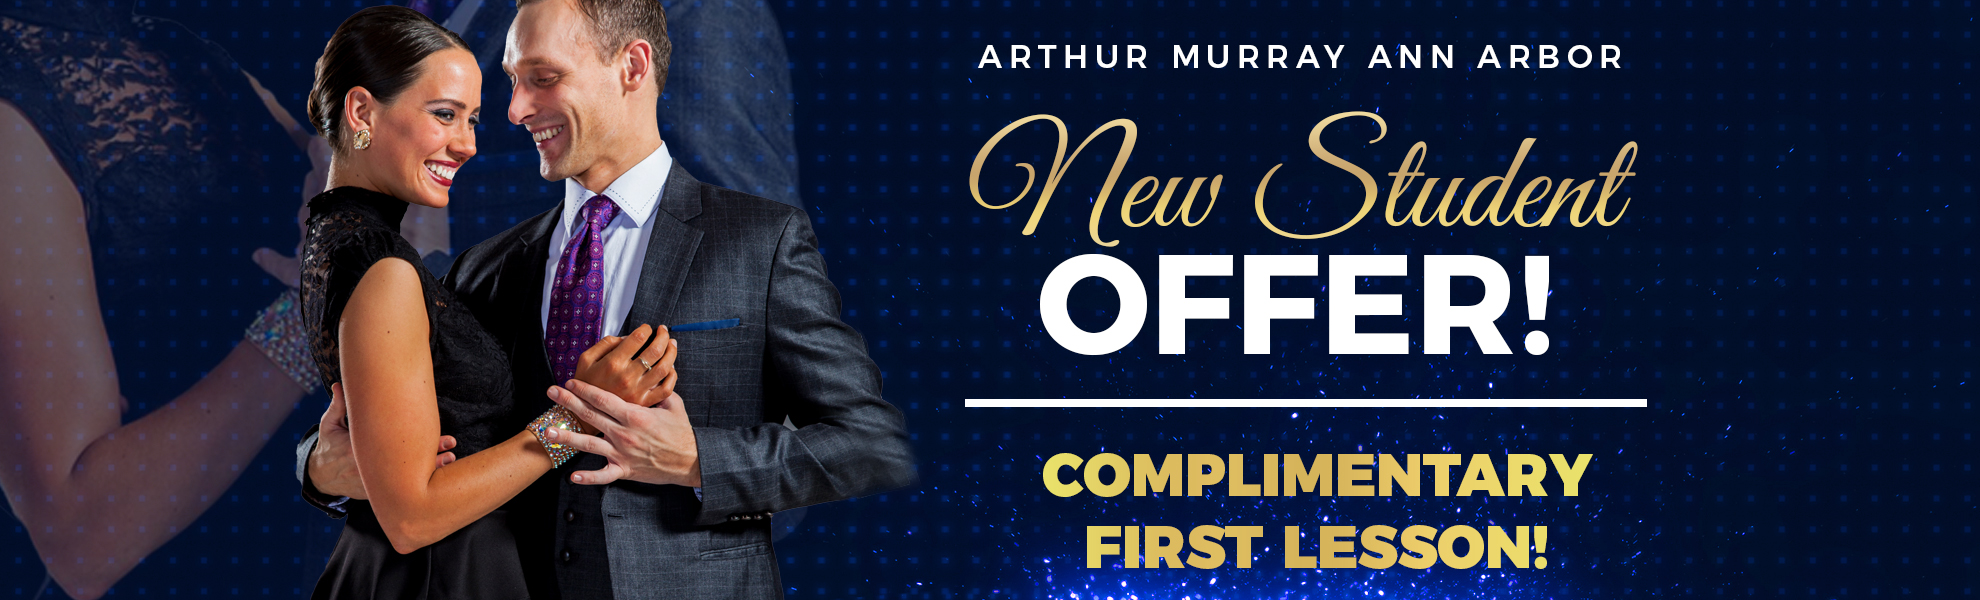 Arthur Murray Arthur Murray Ann Arbor Introductory Lesson